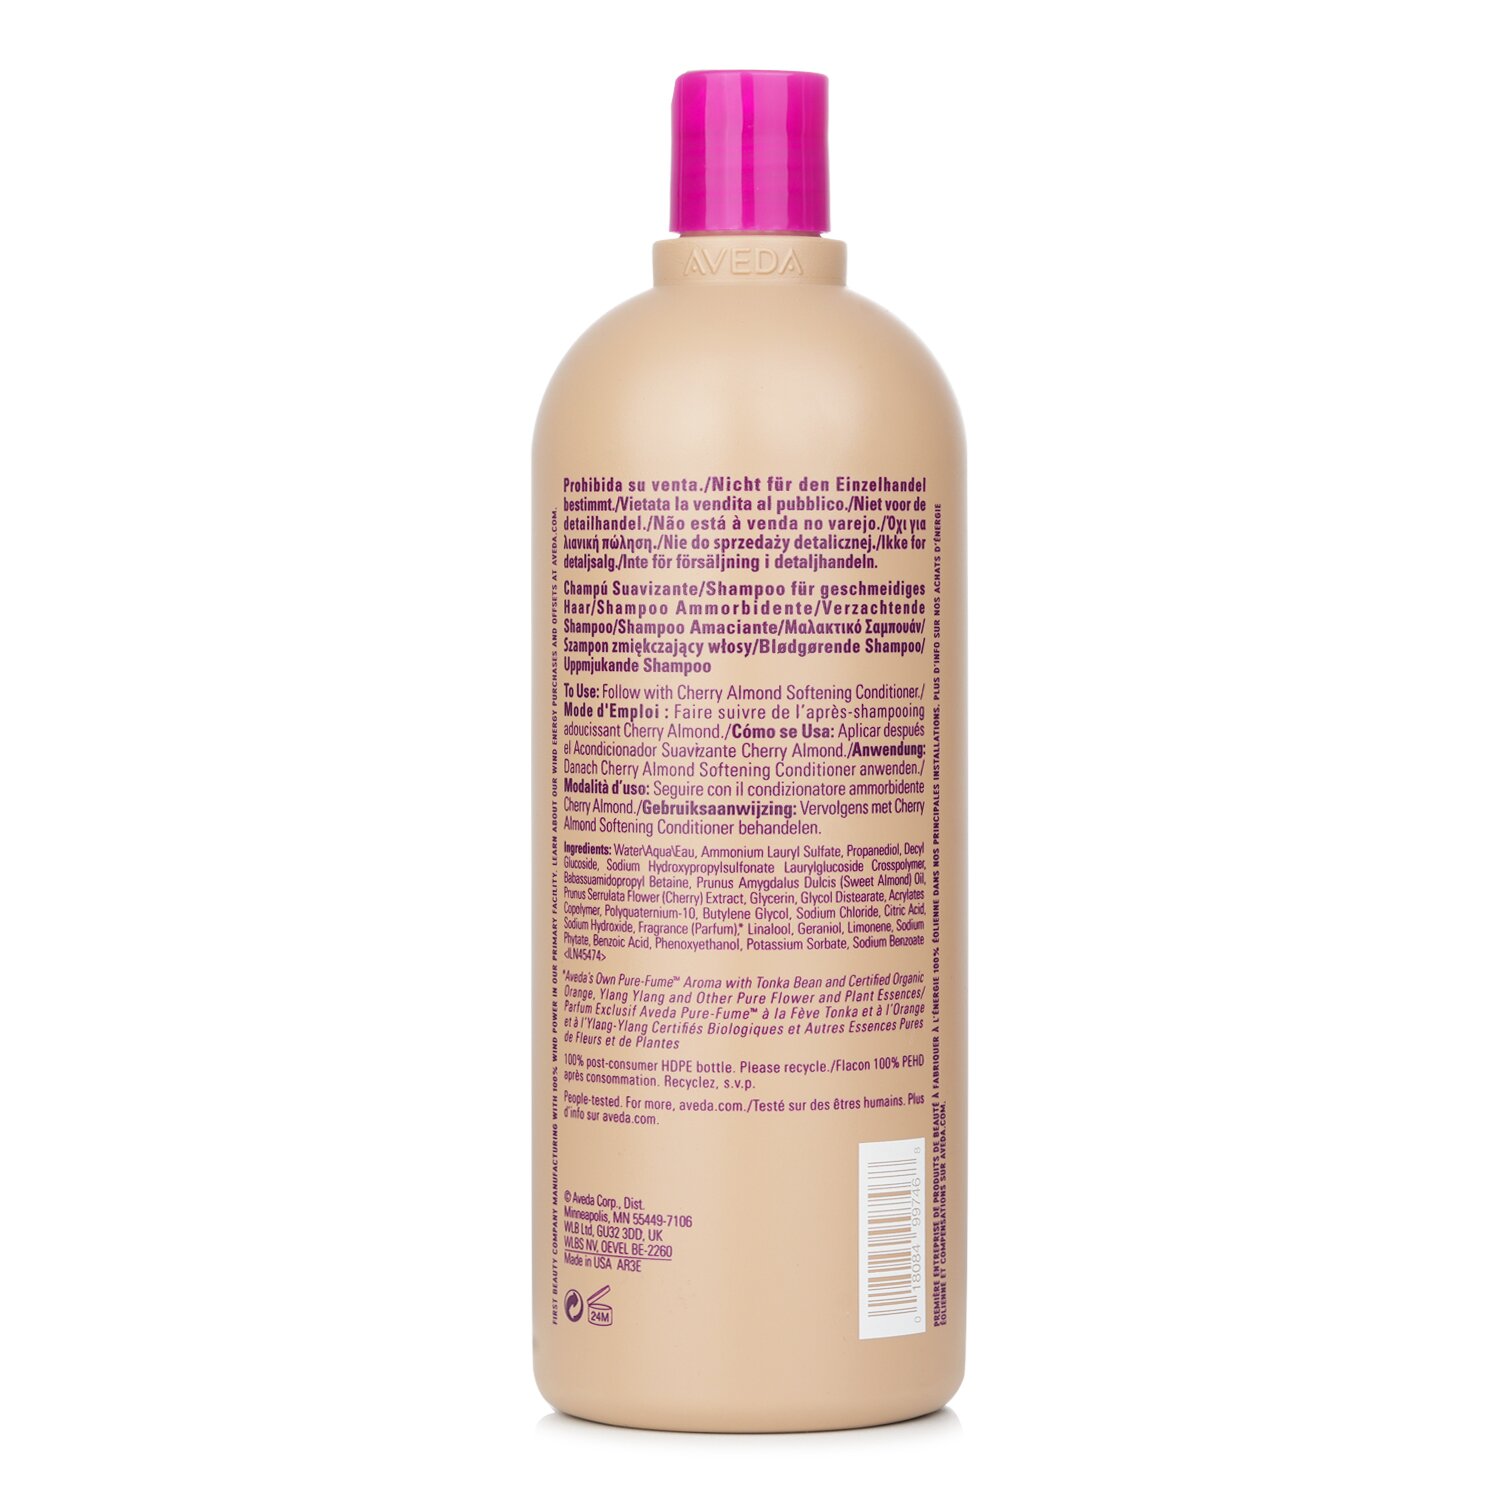 Aveda Cherry Almond Softening Shampoo 1000ml/33.8oz